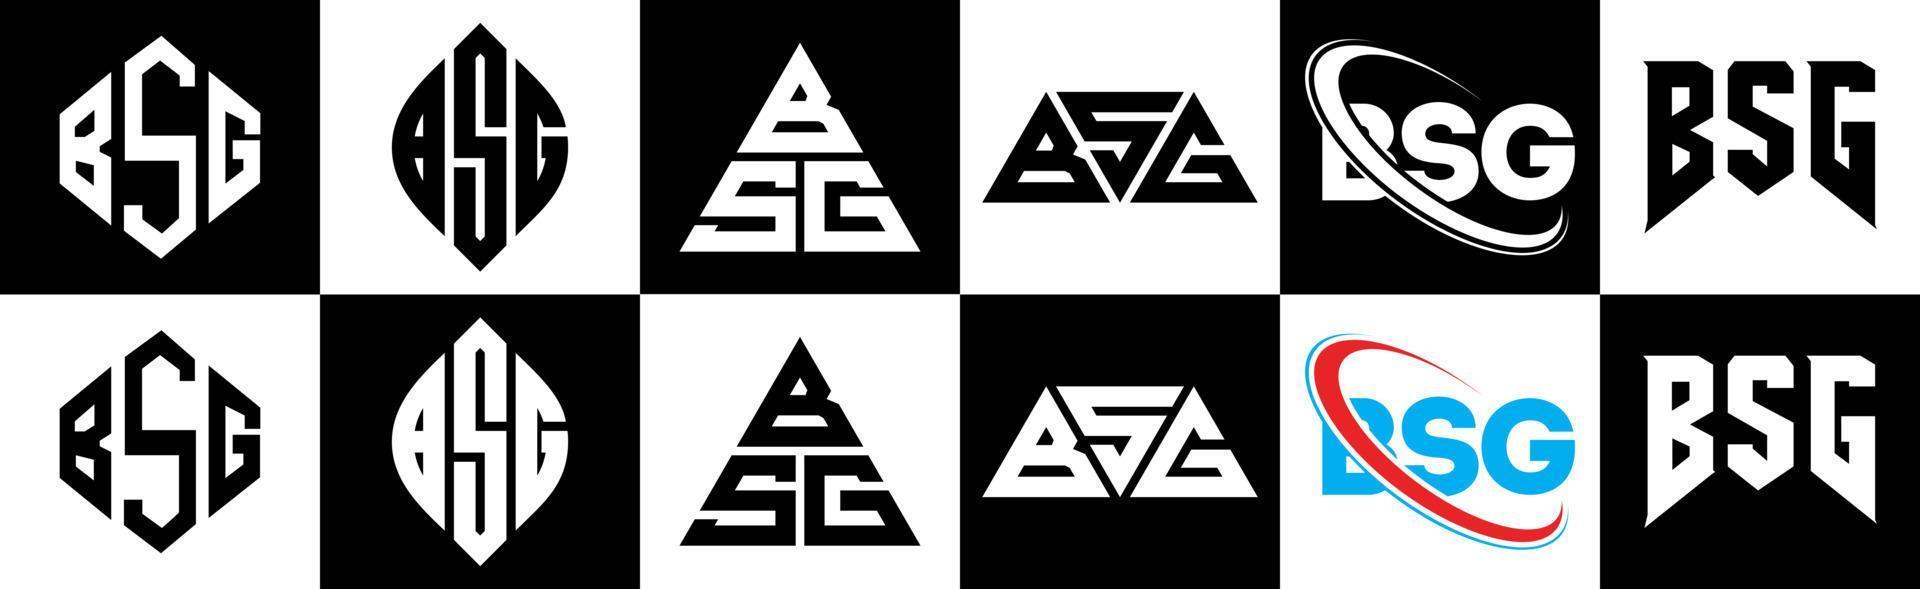 création de logo de lettre bsg en six styles. bsg polygone, cercle, triangle, hexagone, style plat et simple avec logo de lettre de variation de couleur noir et blanc dans un plan de travail. logo bsg minimaliste et classique vecteur